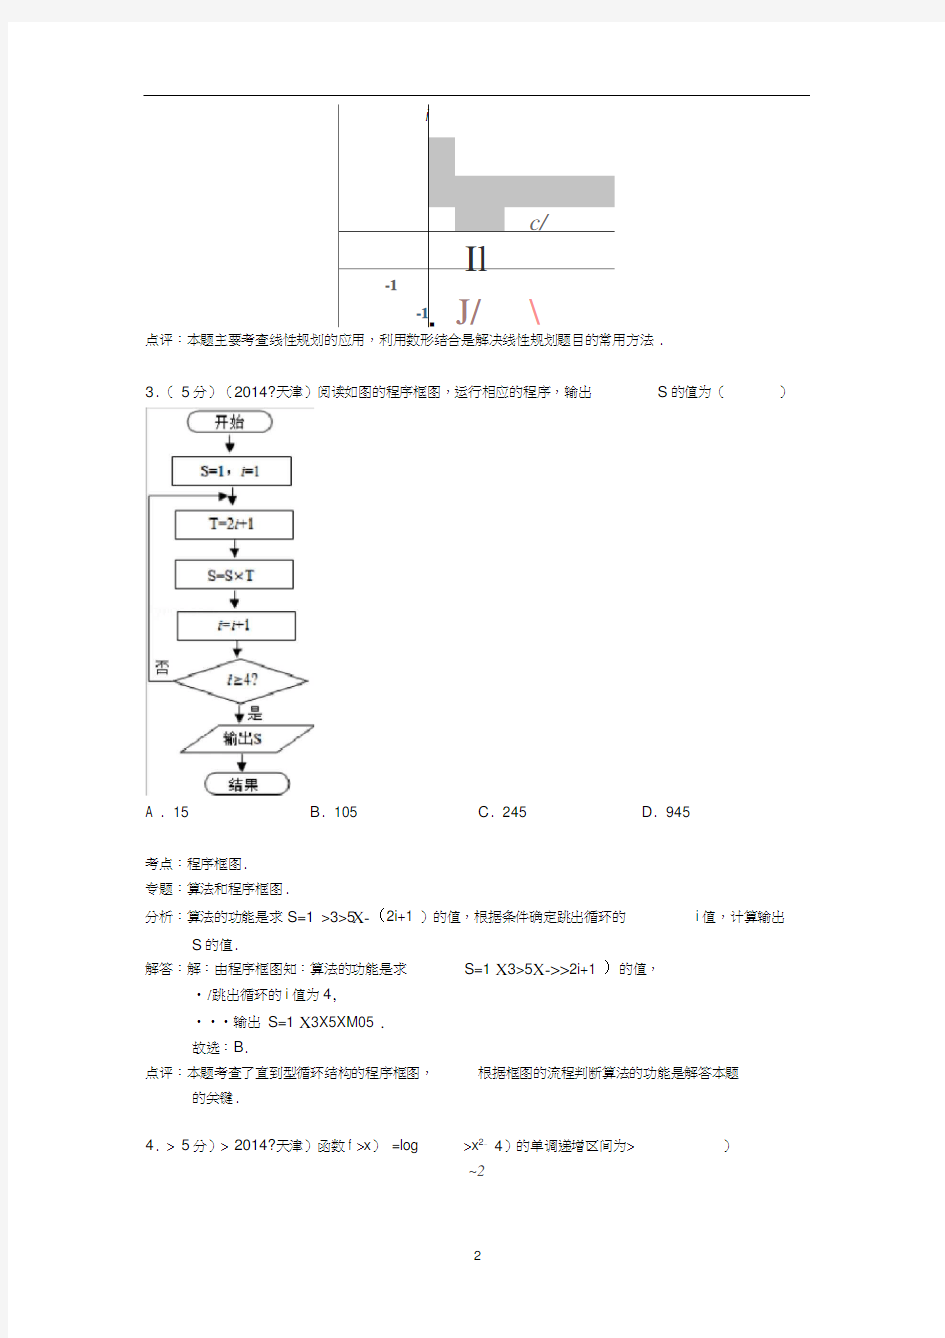 2014年天津市高考数学试卷(理科)答案与解析